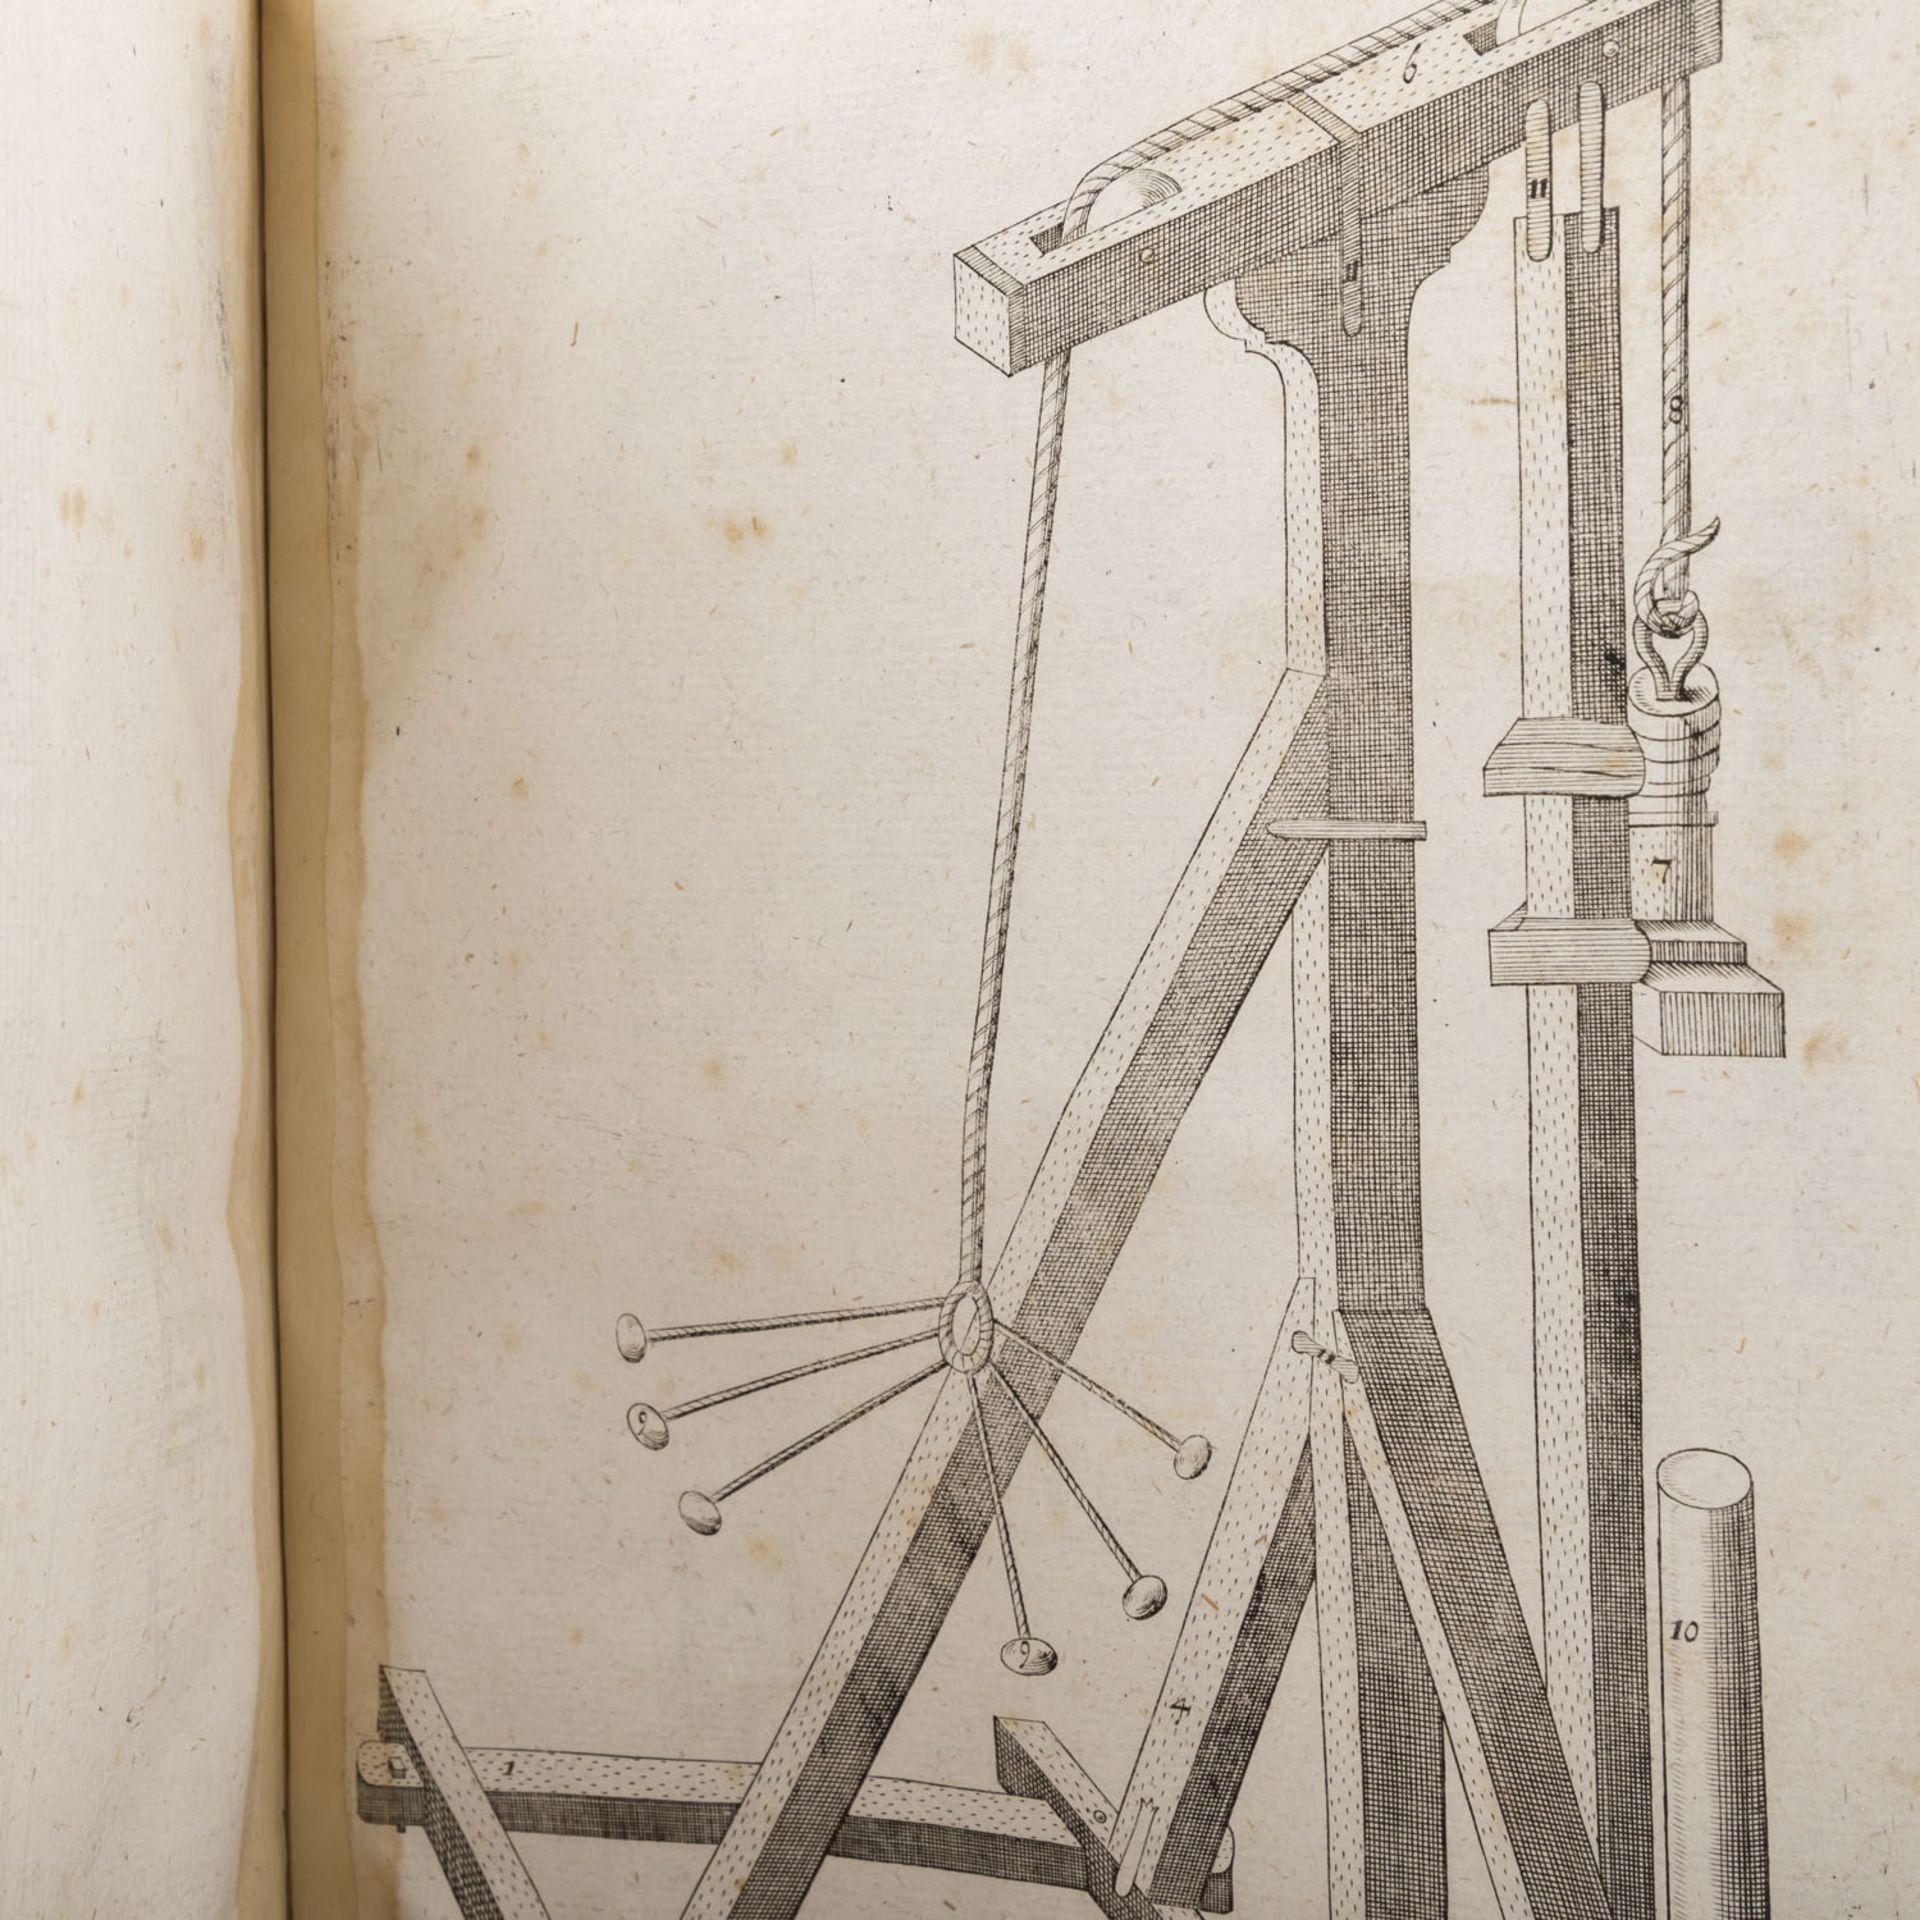 Außergewöhnliches Buch über die Baukunst, 18.Jh. -Johann Vogel (Hrsg), "Die Moderne Baukunst (...)", - Bild 4 aus 4